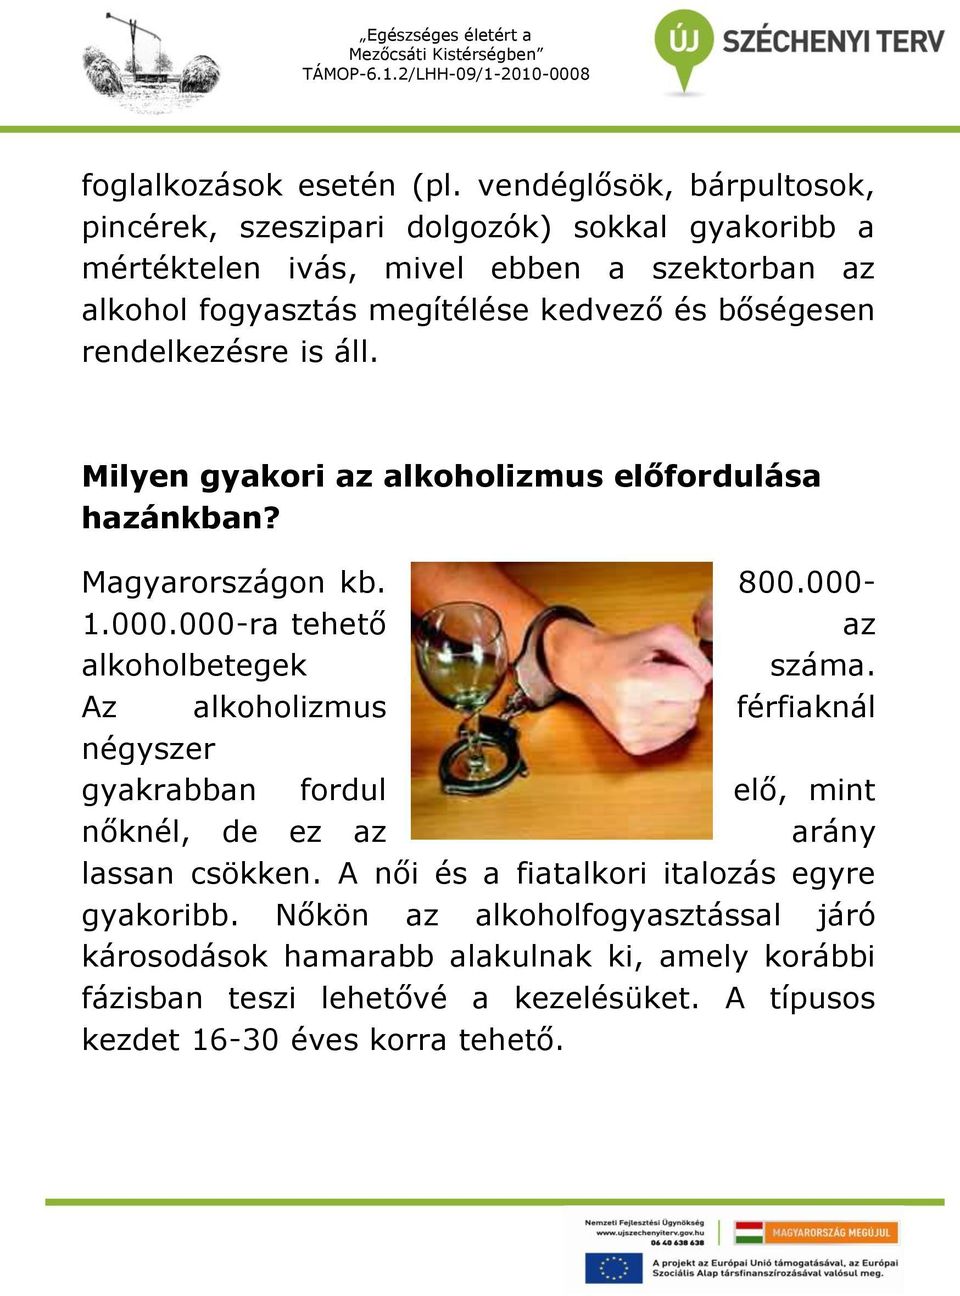 bőségesen rendelkezésre is áll. Milyen gyakori az alkoholizmus előfordulása hazánkban? Magyarországon kb. 800.000-1.000.000-ra tehető az alkoholbetegek száma.